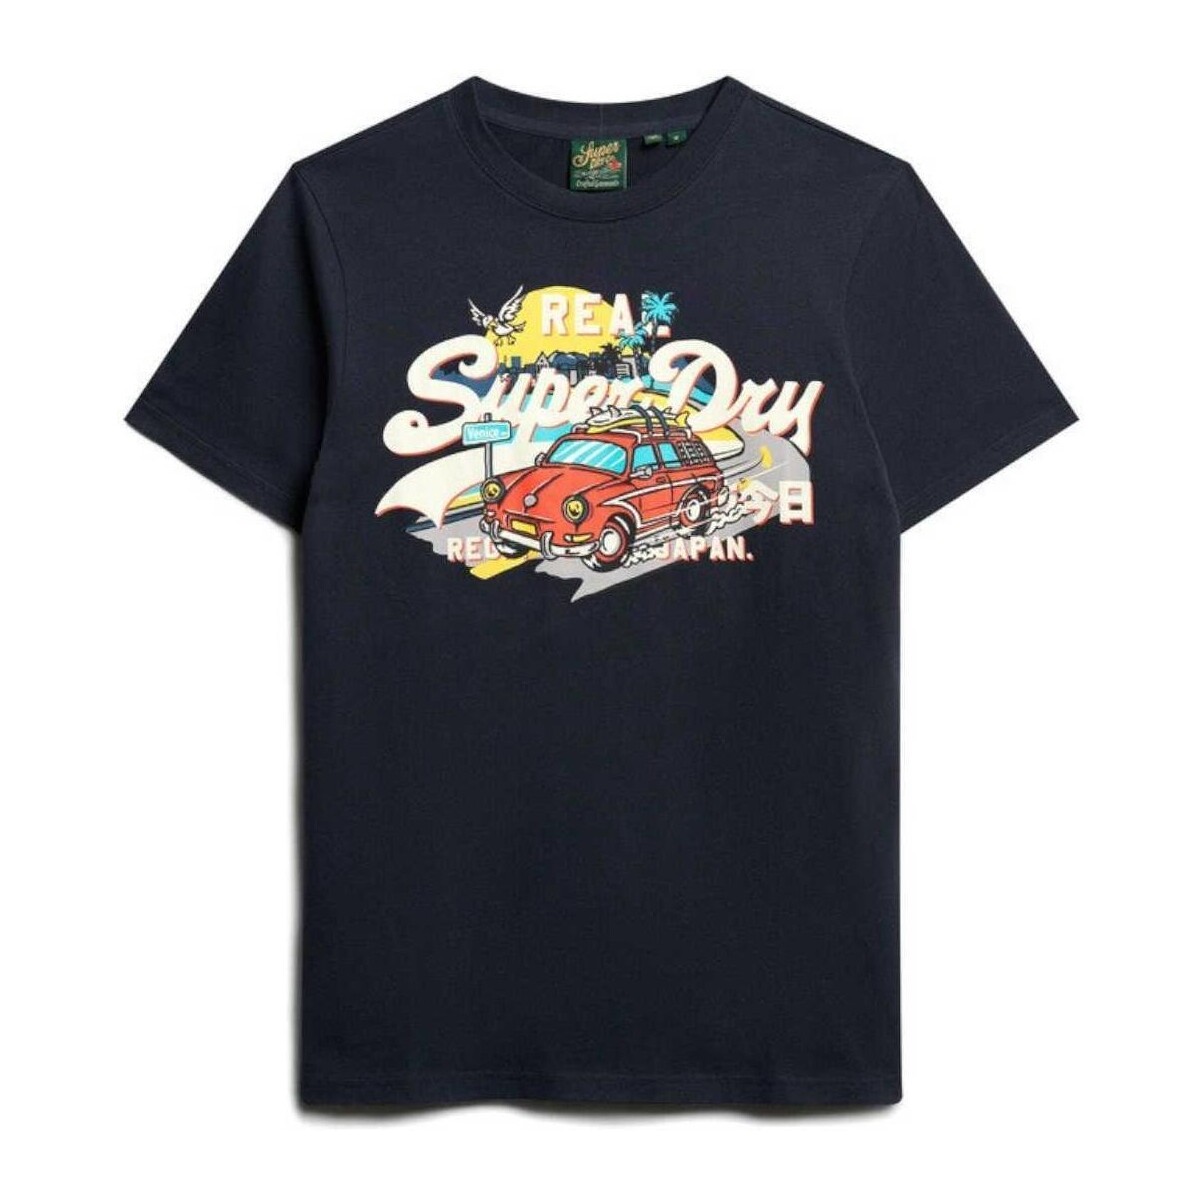 Kleidung Herren T-Shirts Superdry  Blau